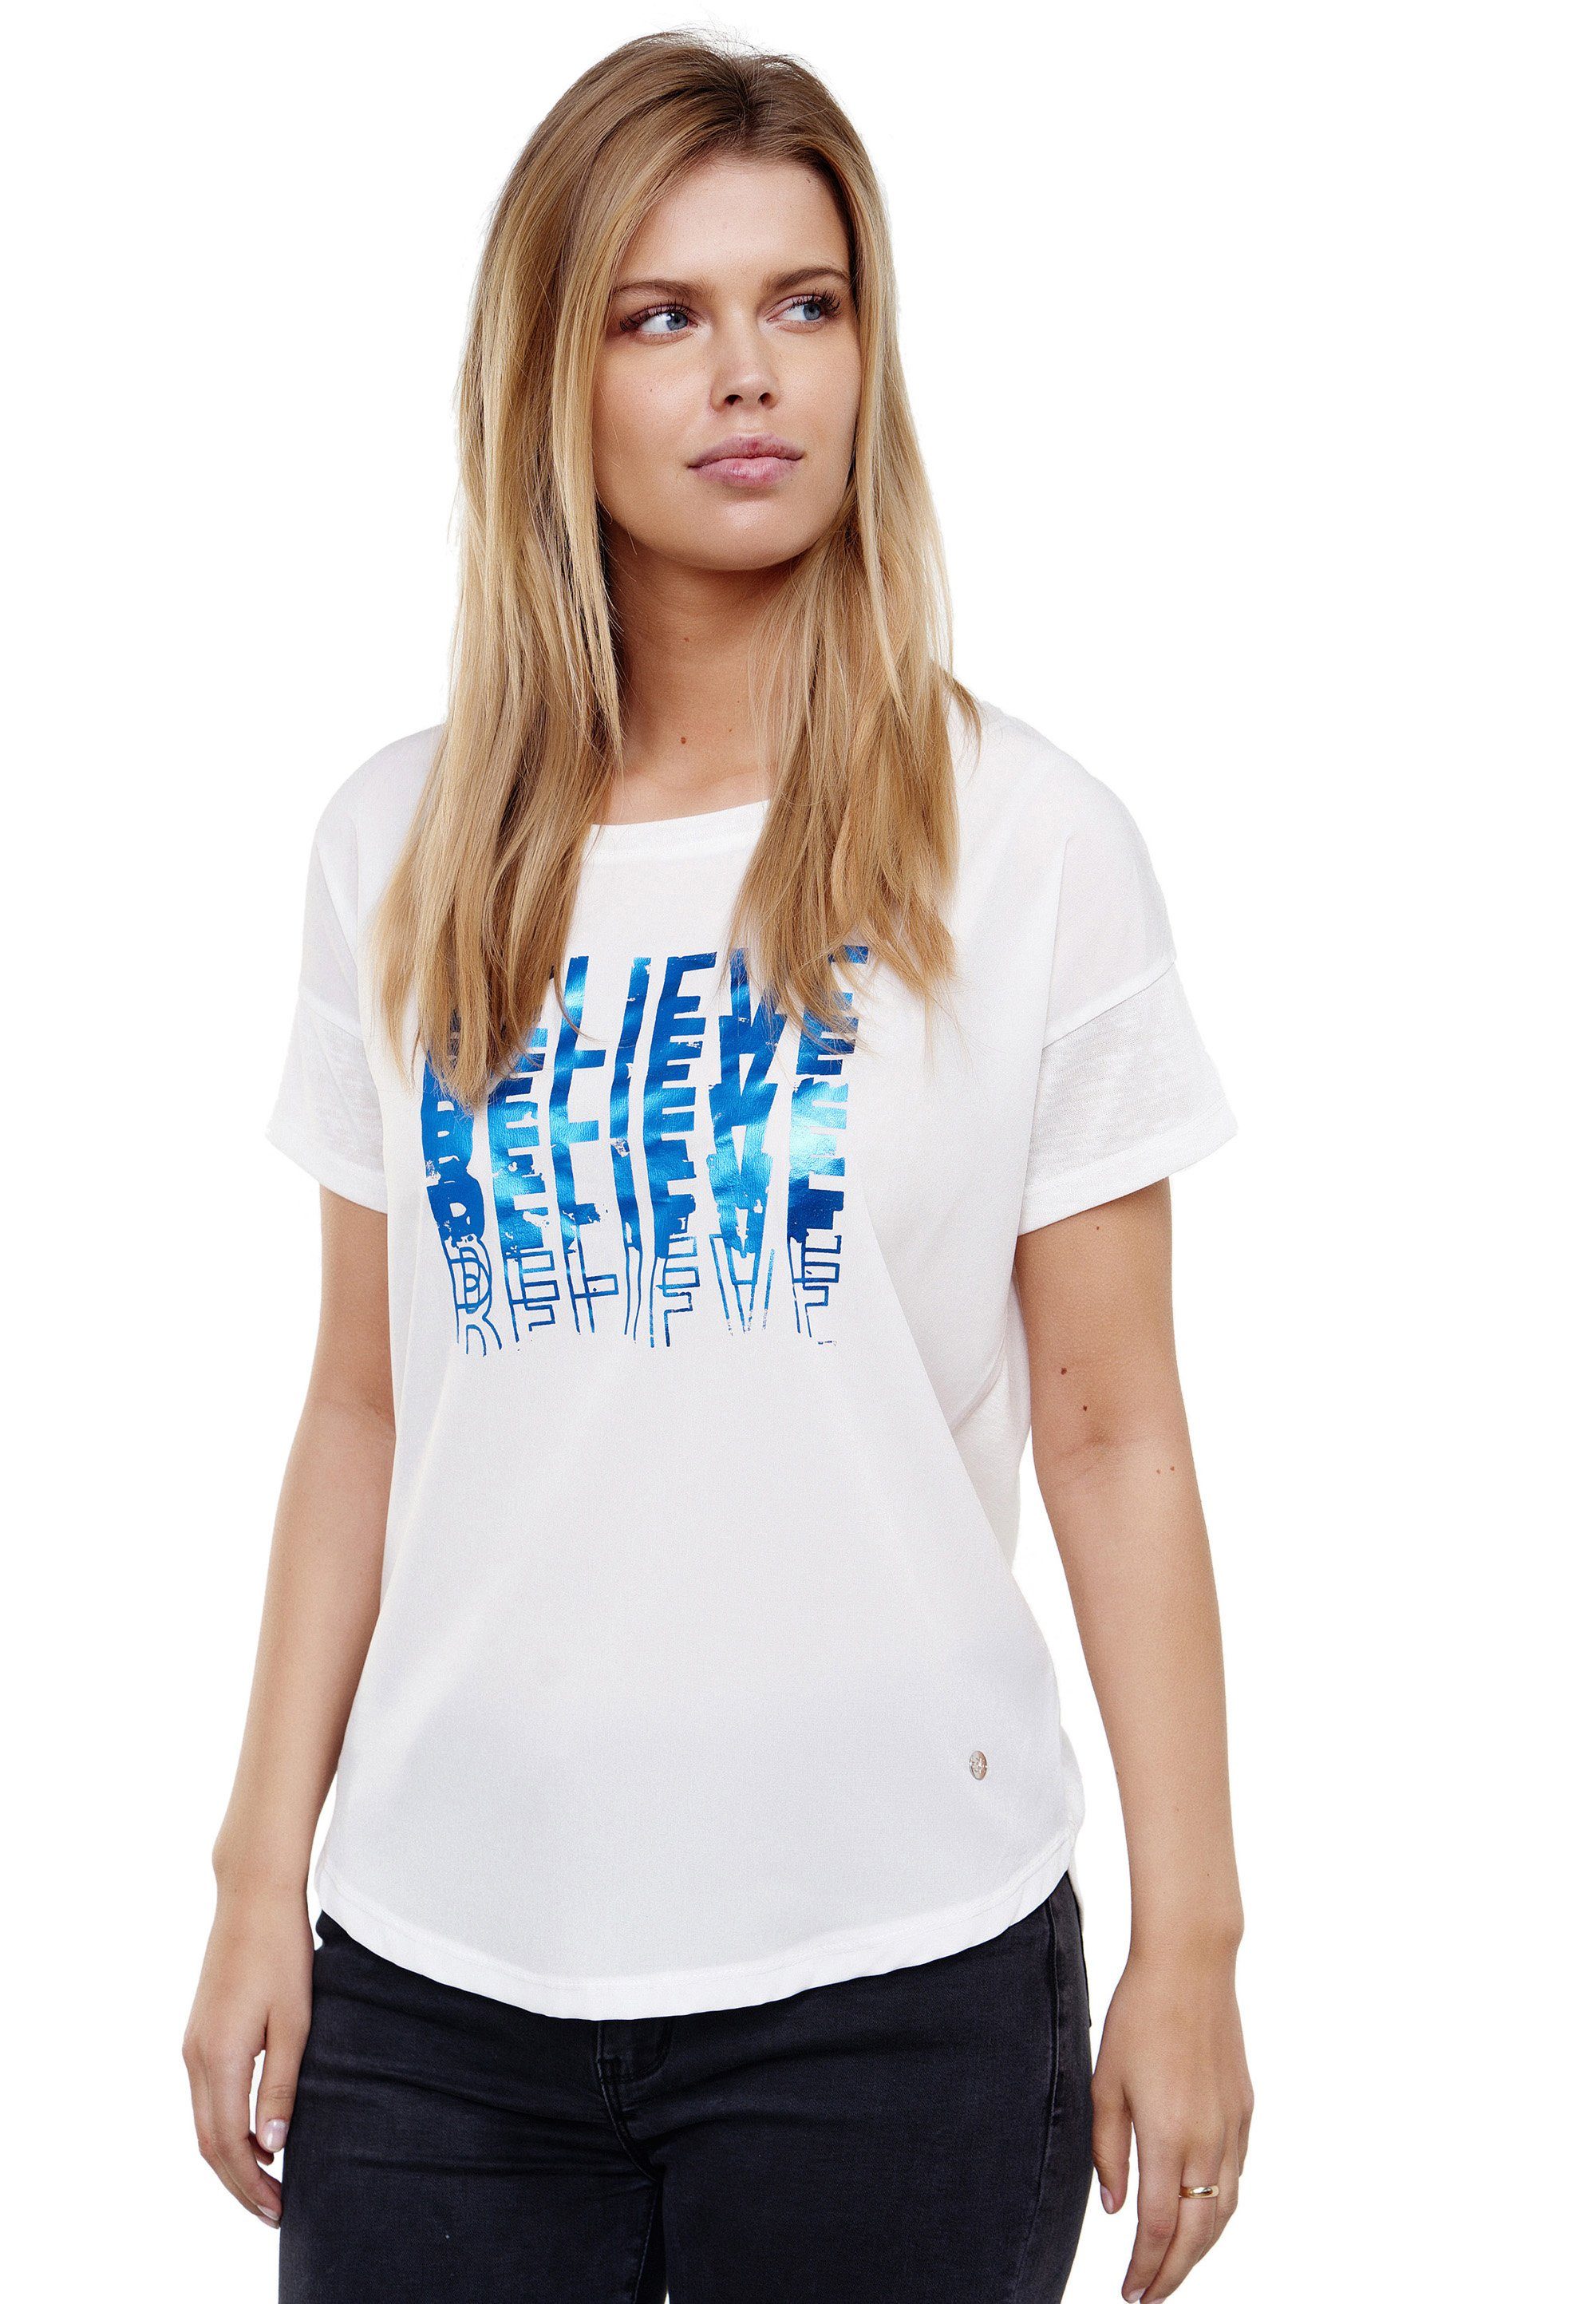 Decay T-Shirt Believe detailliertem Printmotiv mit blau